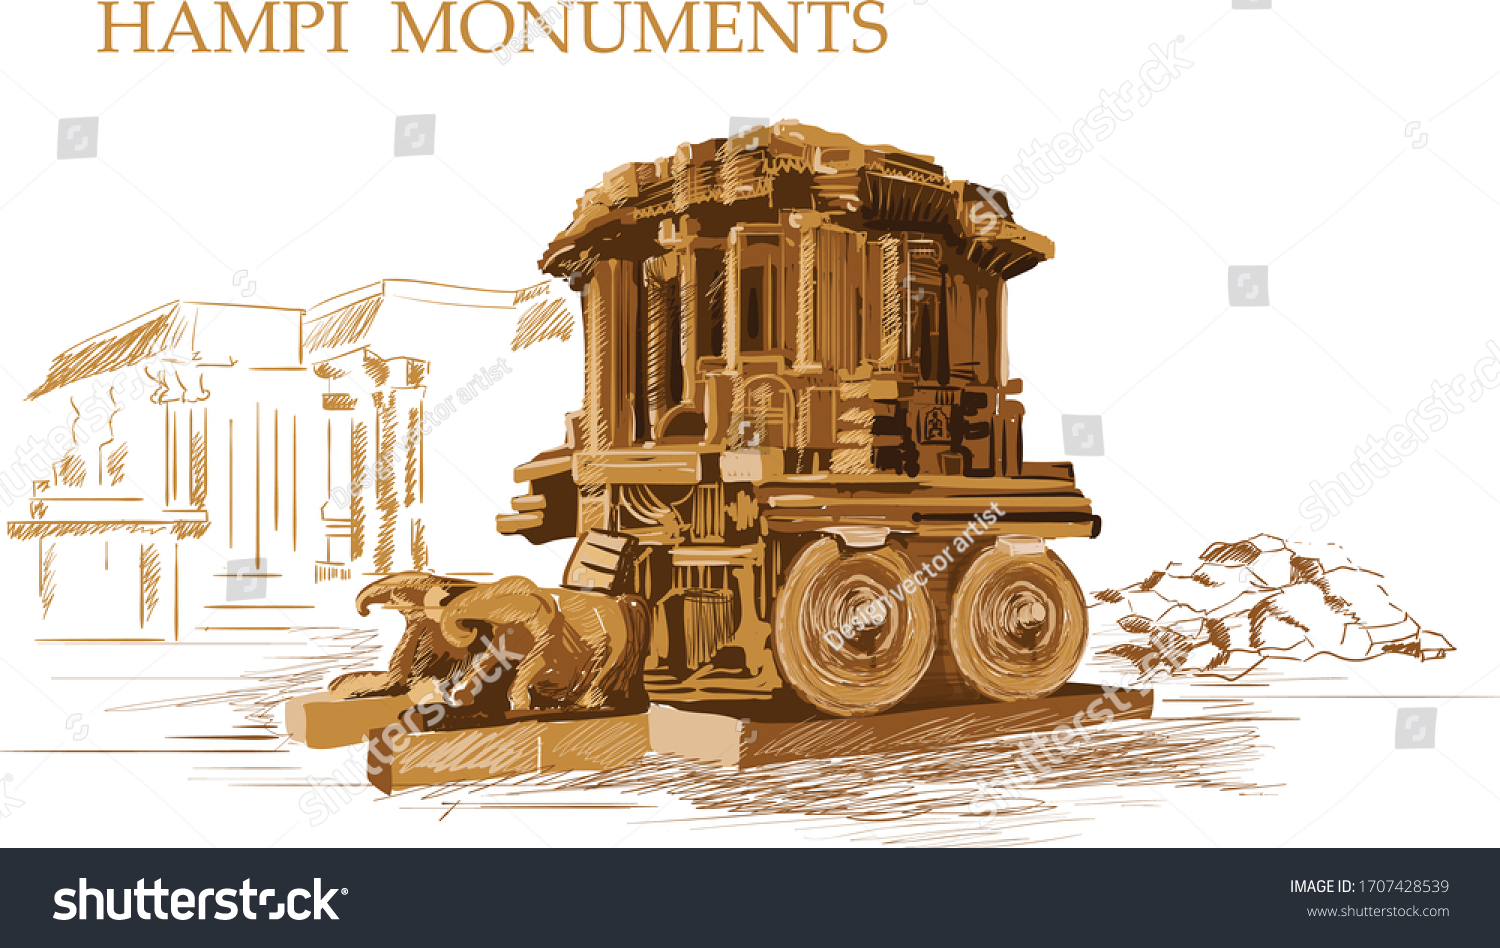 11,477 Historical monuments karnataka Images, Stock Photos & Vectors ...